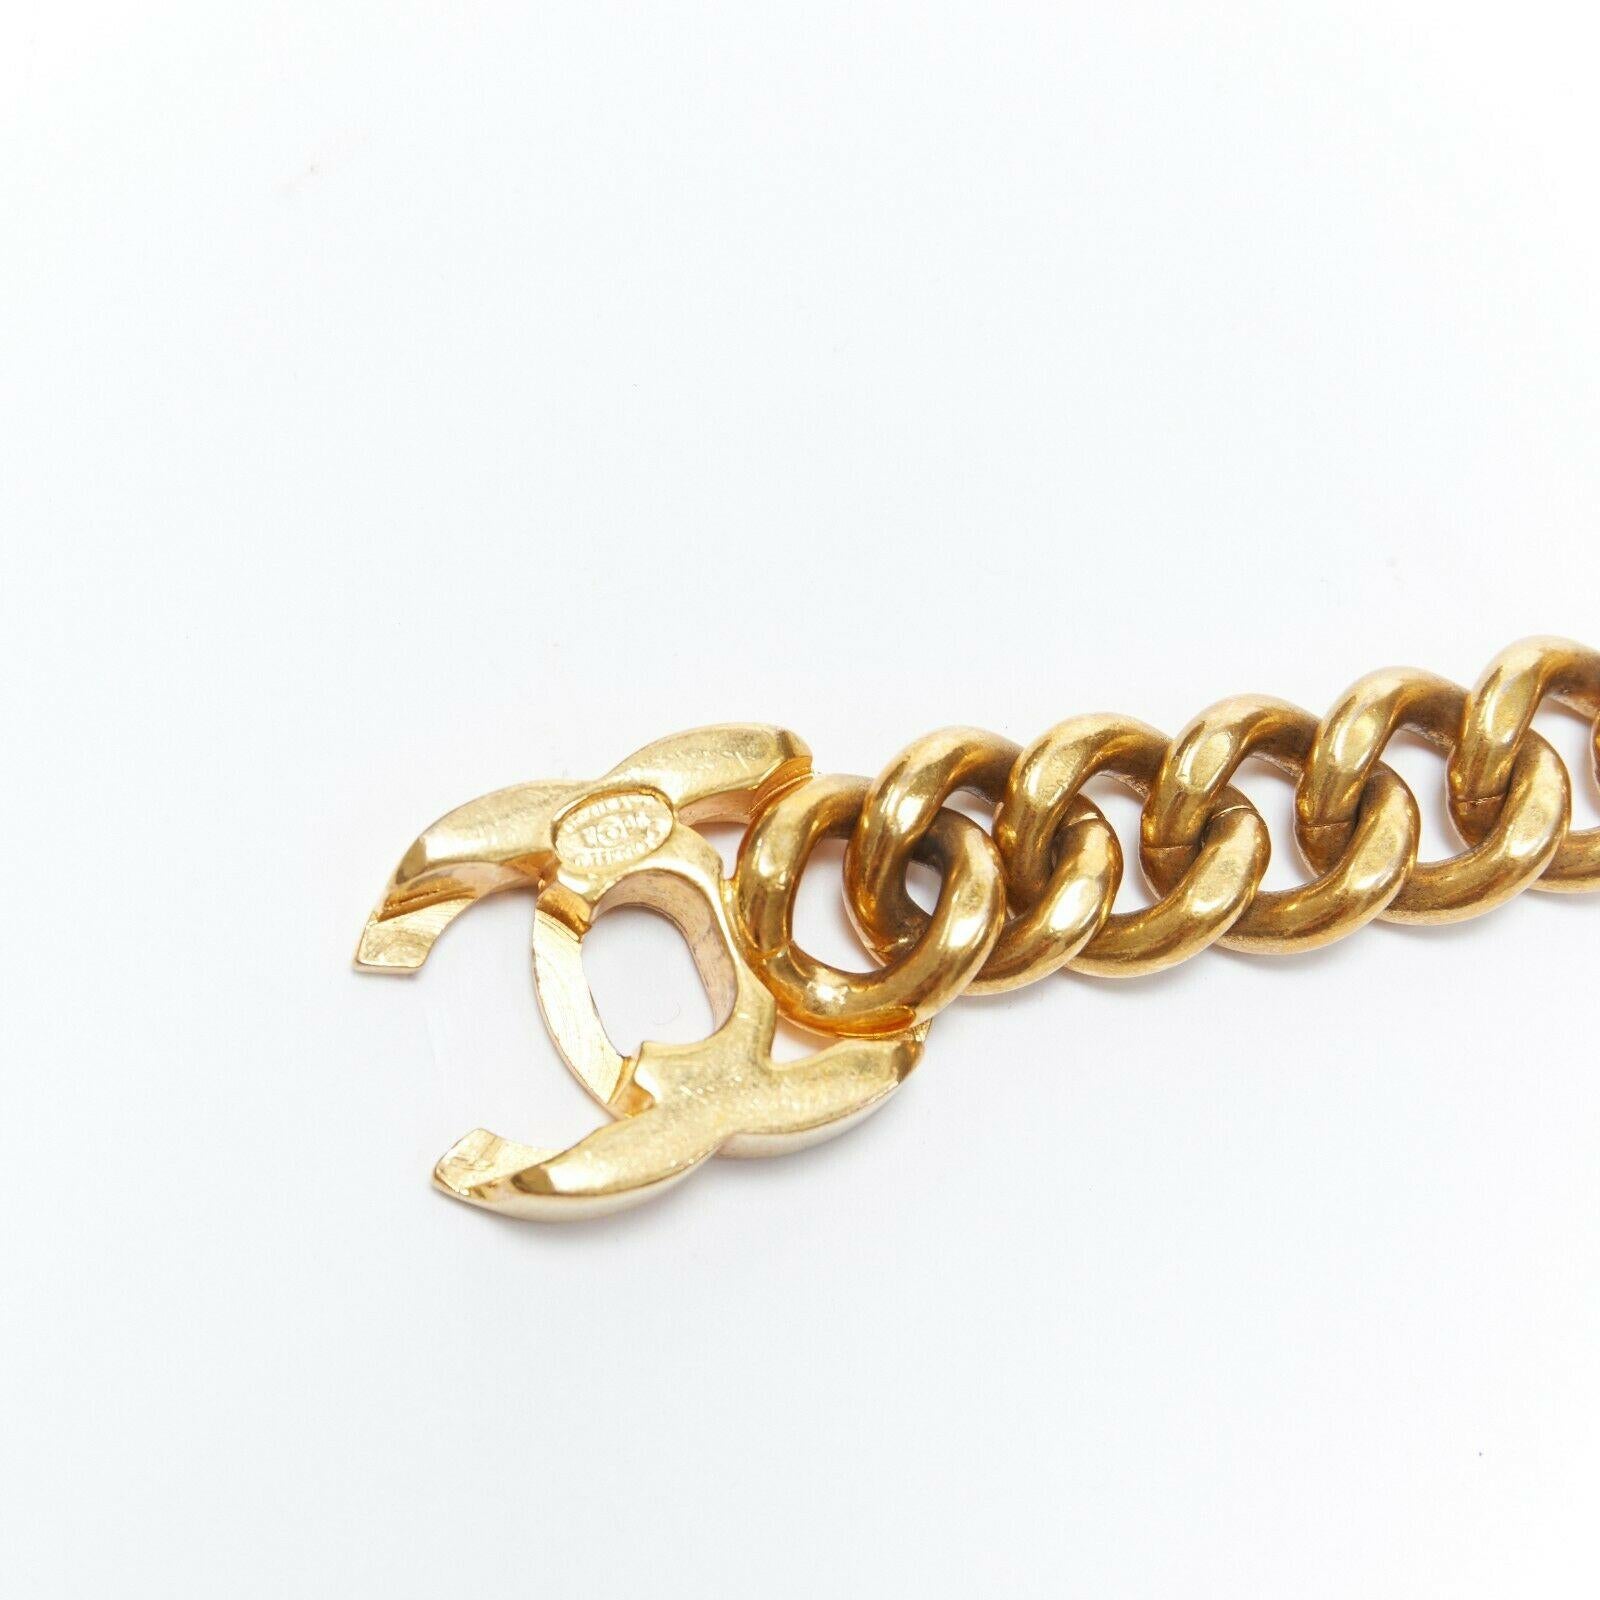 Women's CHANEL KARL LAGERFELD heavy duty gold tone metal chain CC turnlock belt necklace